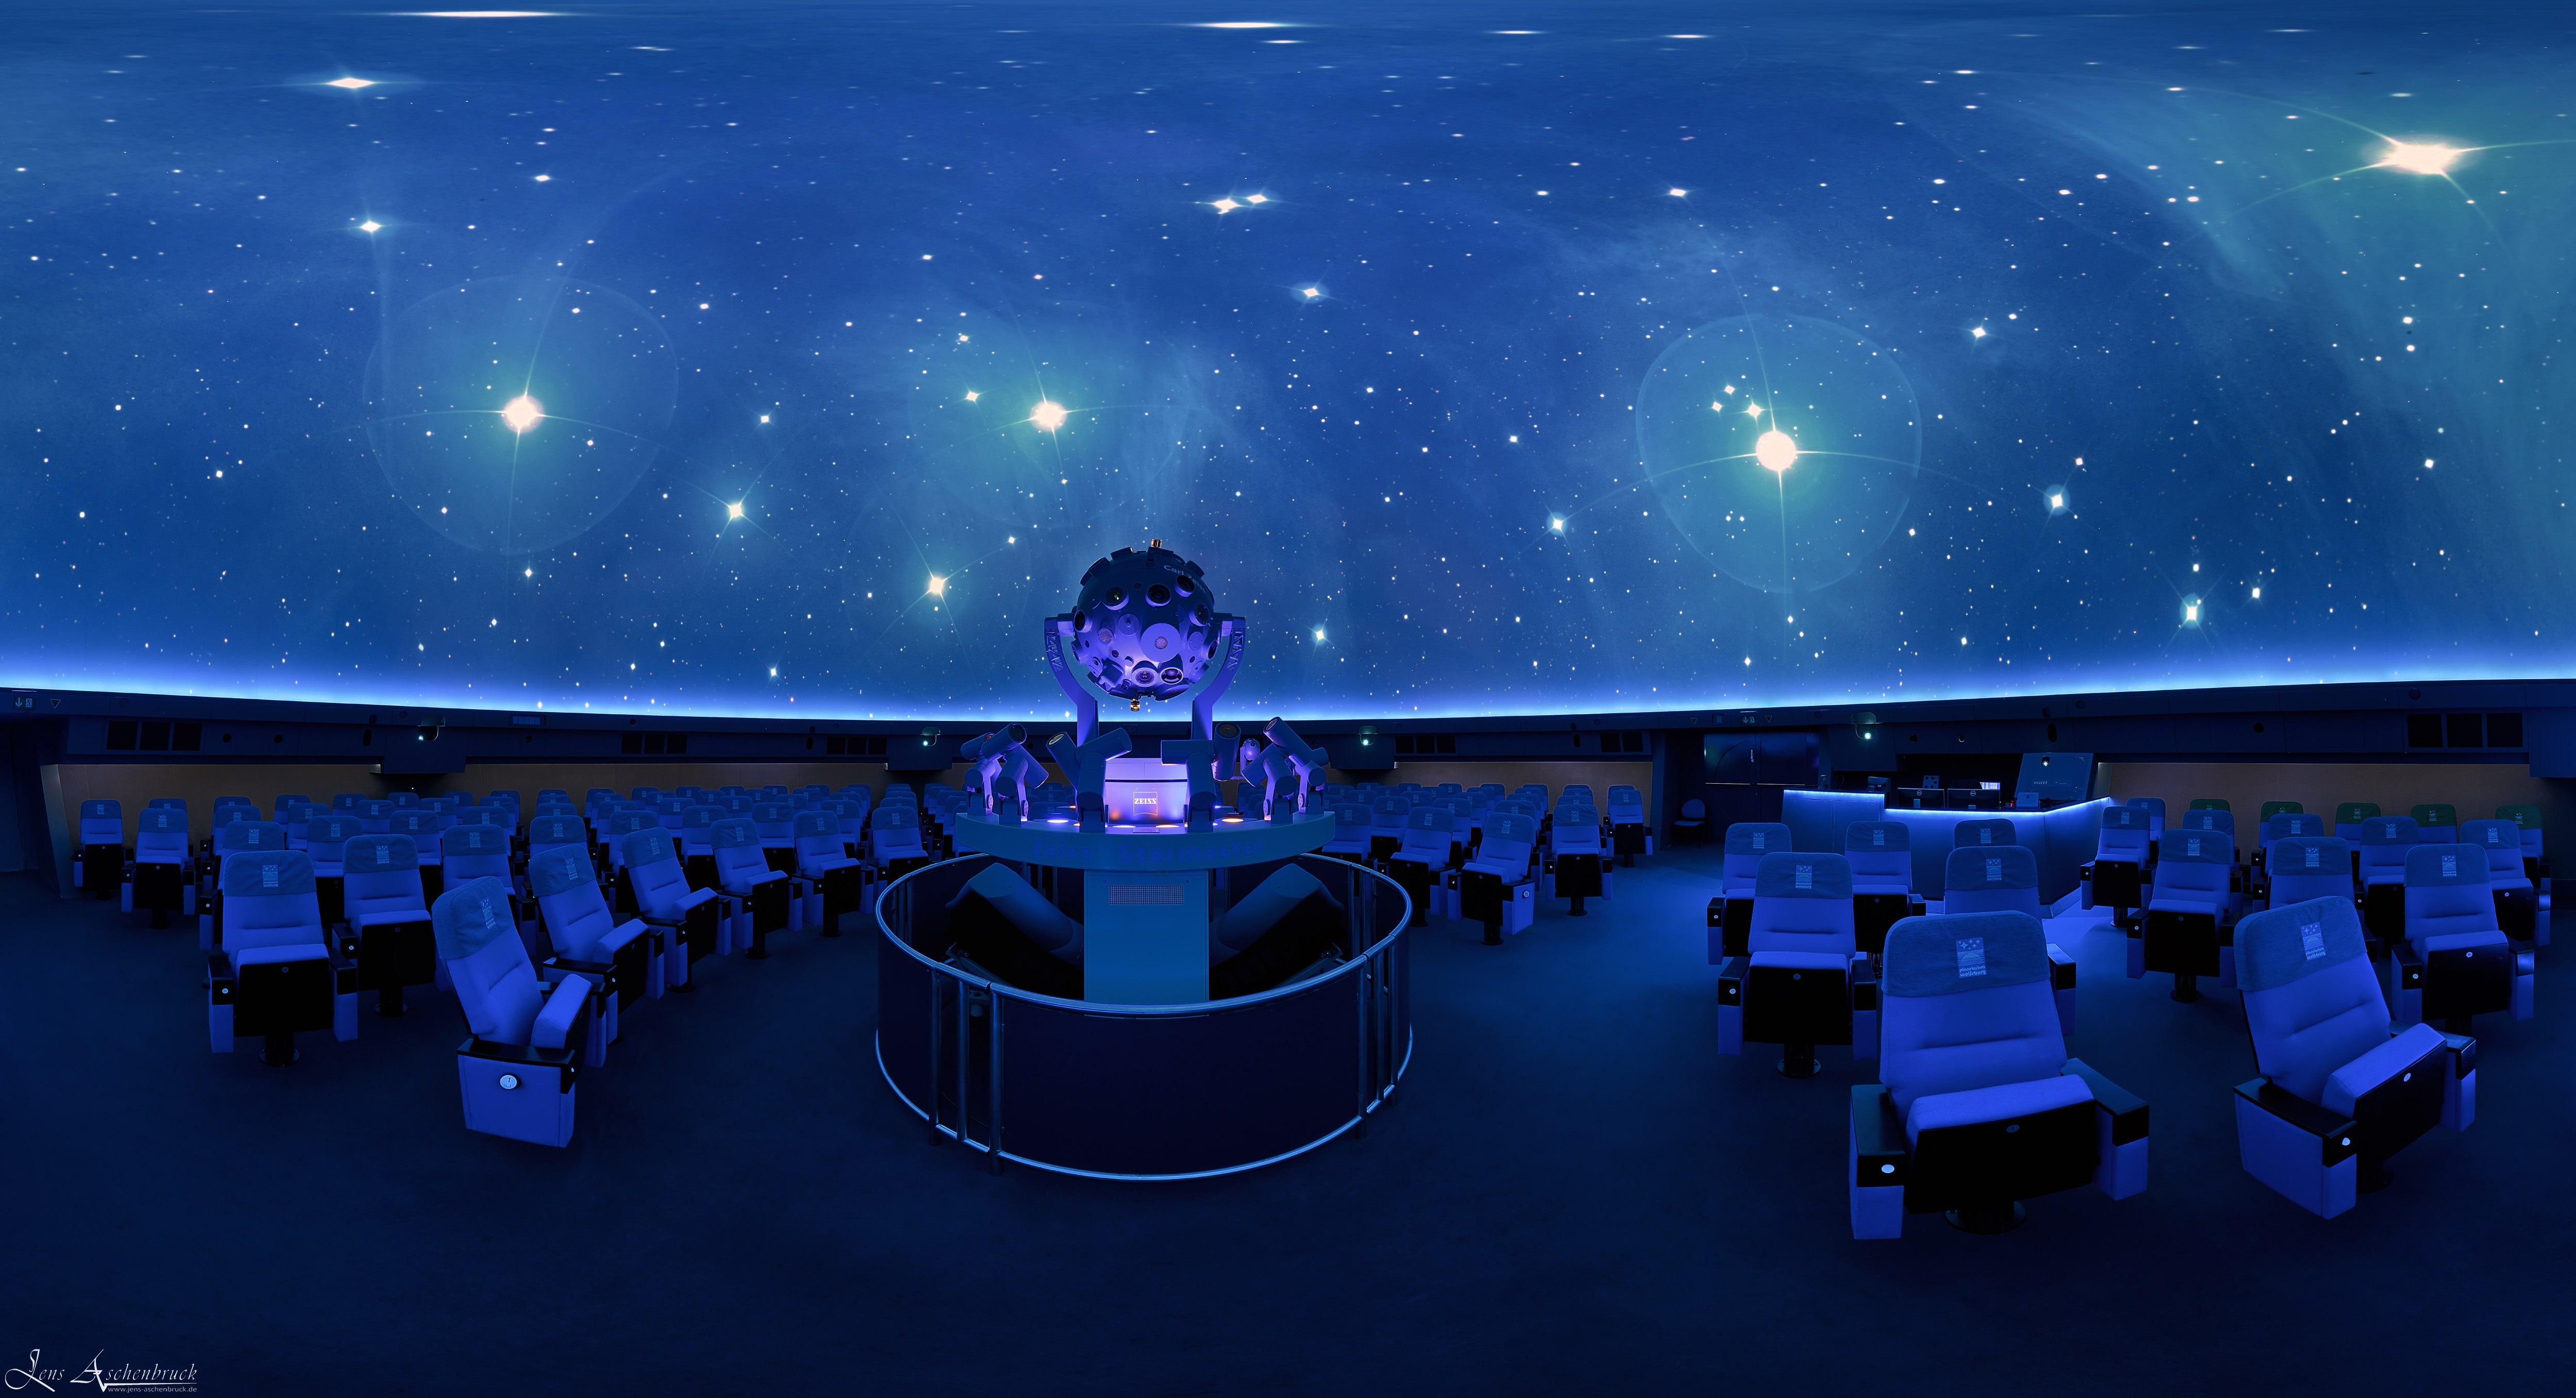 Interior view of the planetarium